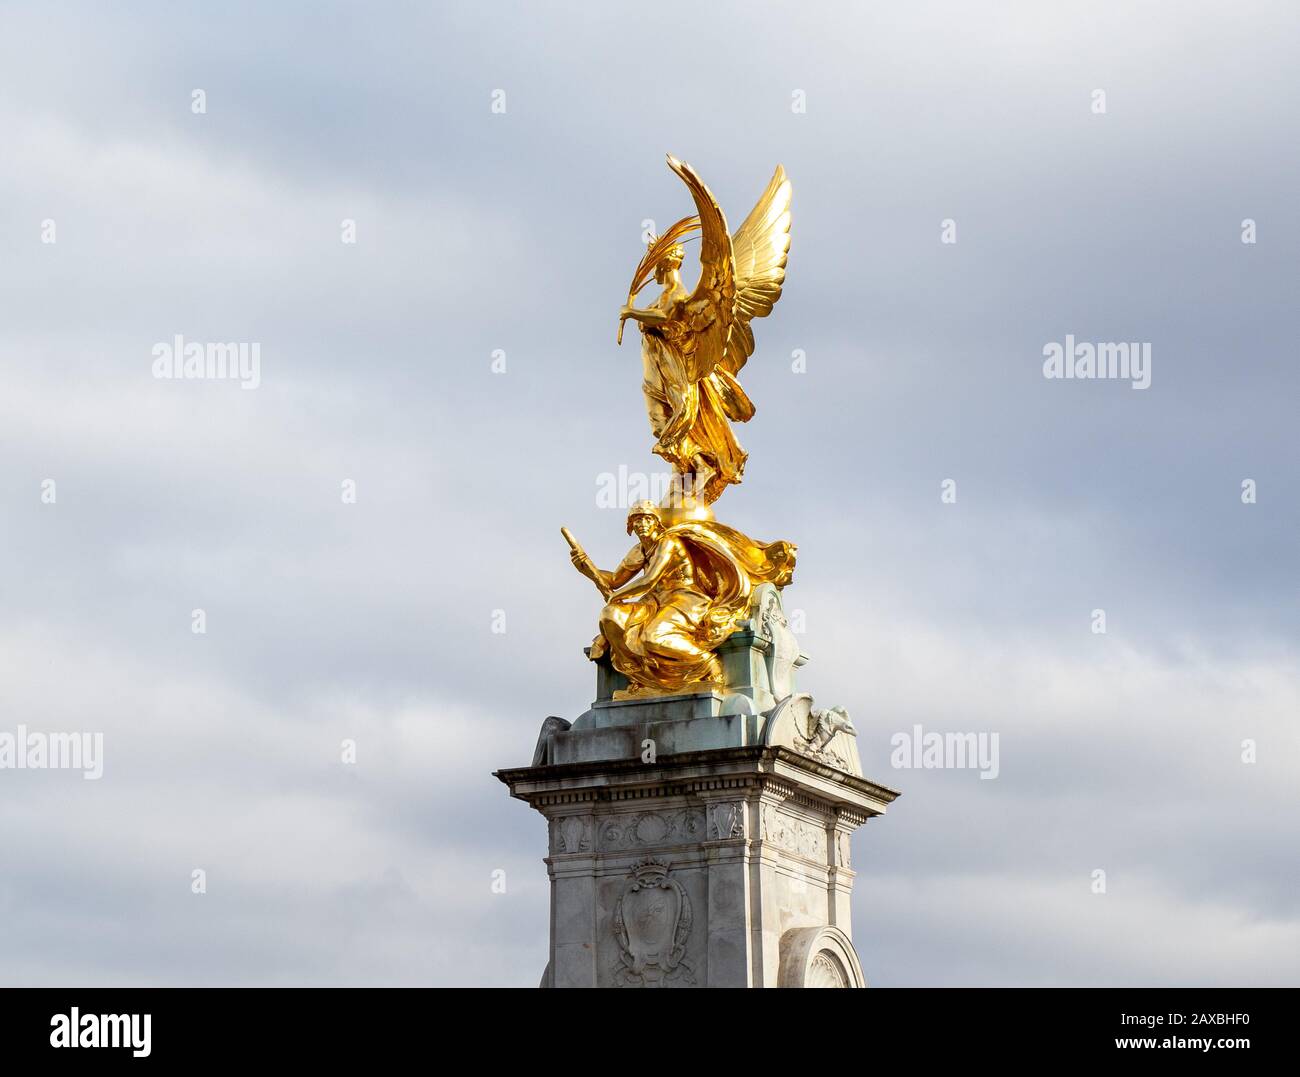 Estatua de Nike Goddess of Victory en el Monumento a Victoria en las afueras del Palacio de Buckingham, Londres Foto de stock